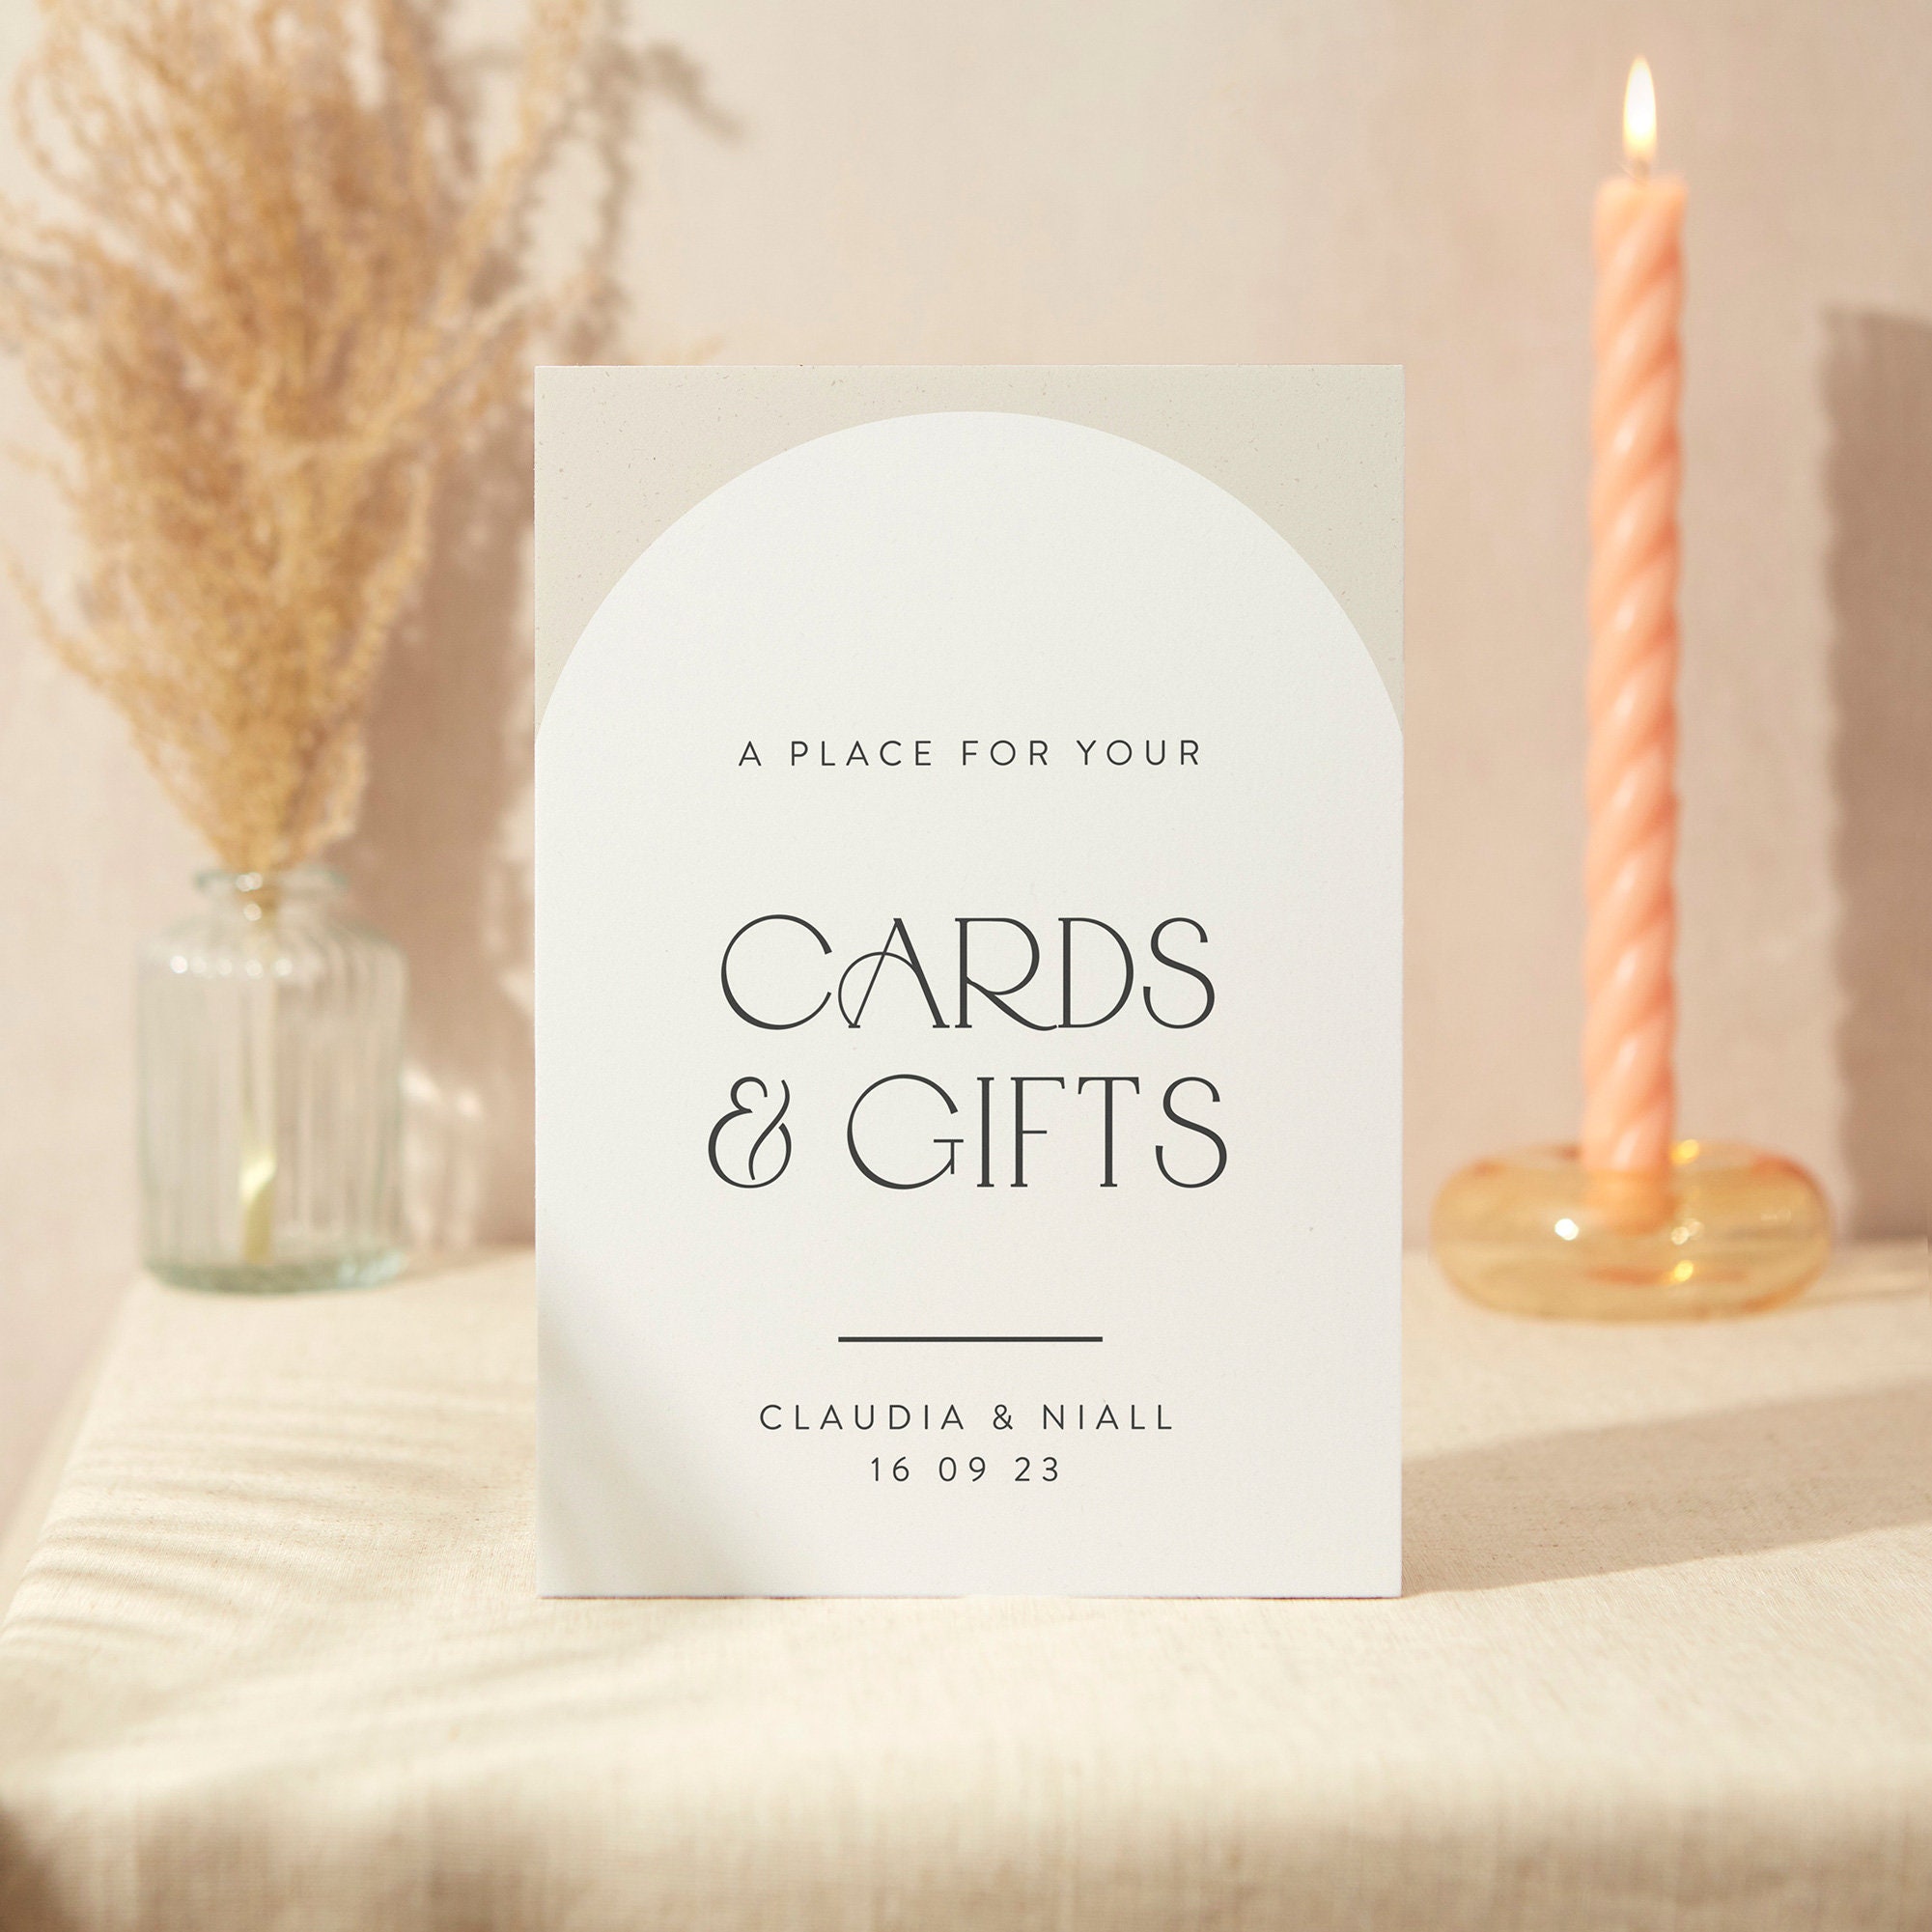 Cards & Gifts Sign | Wedding A5 Sturdy Foamex Minimalist Arch